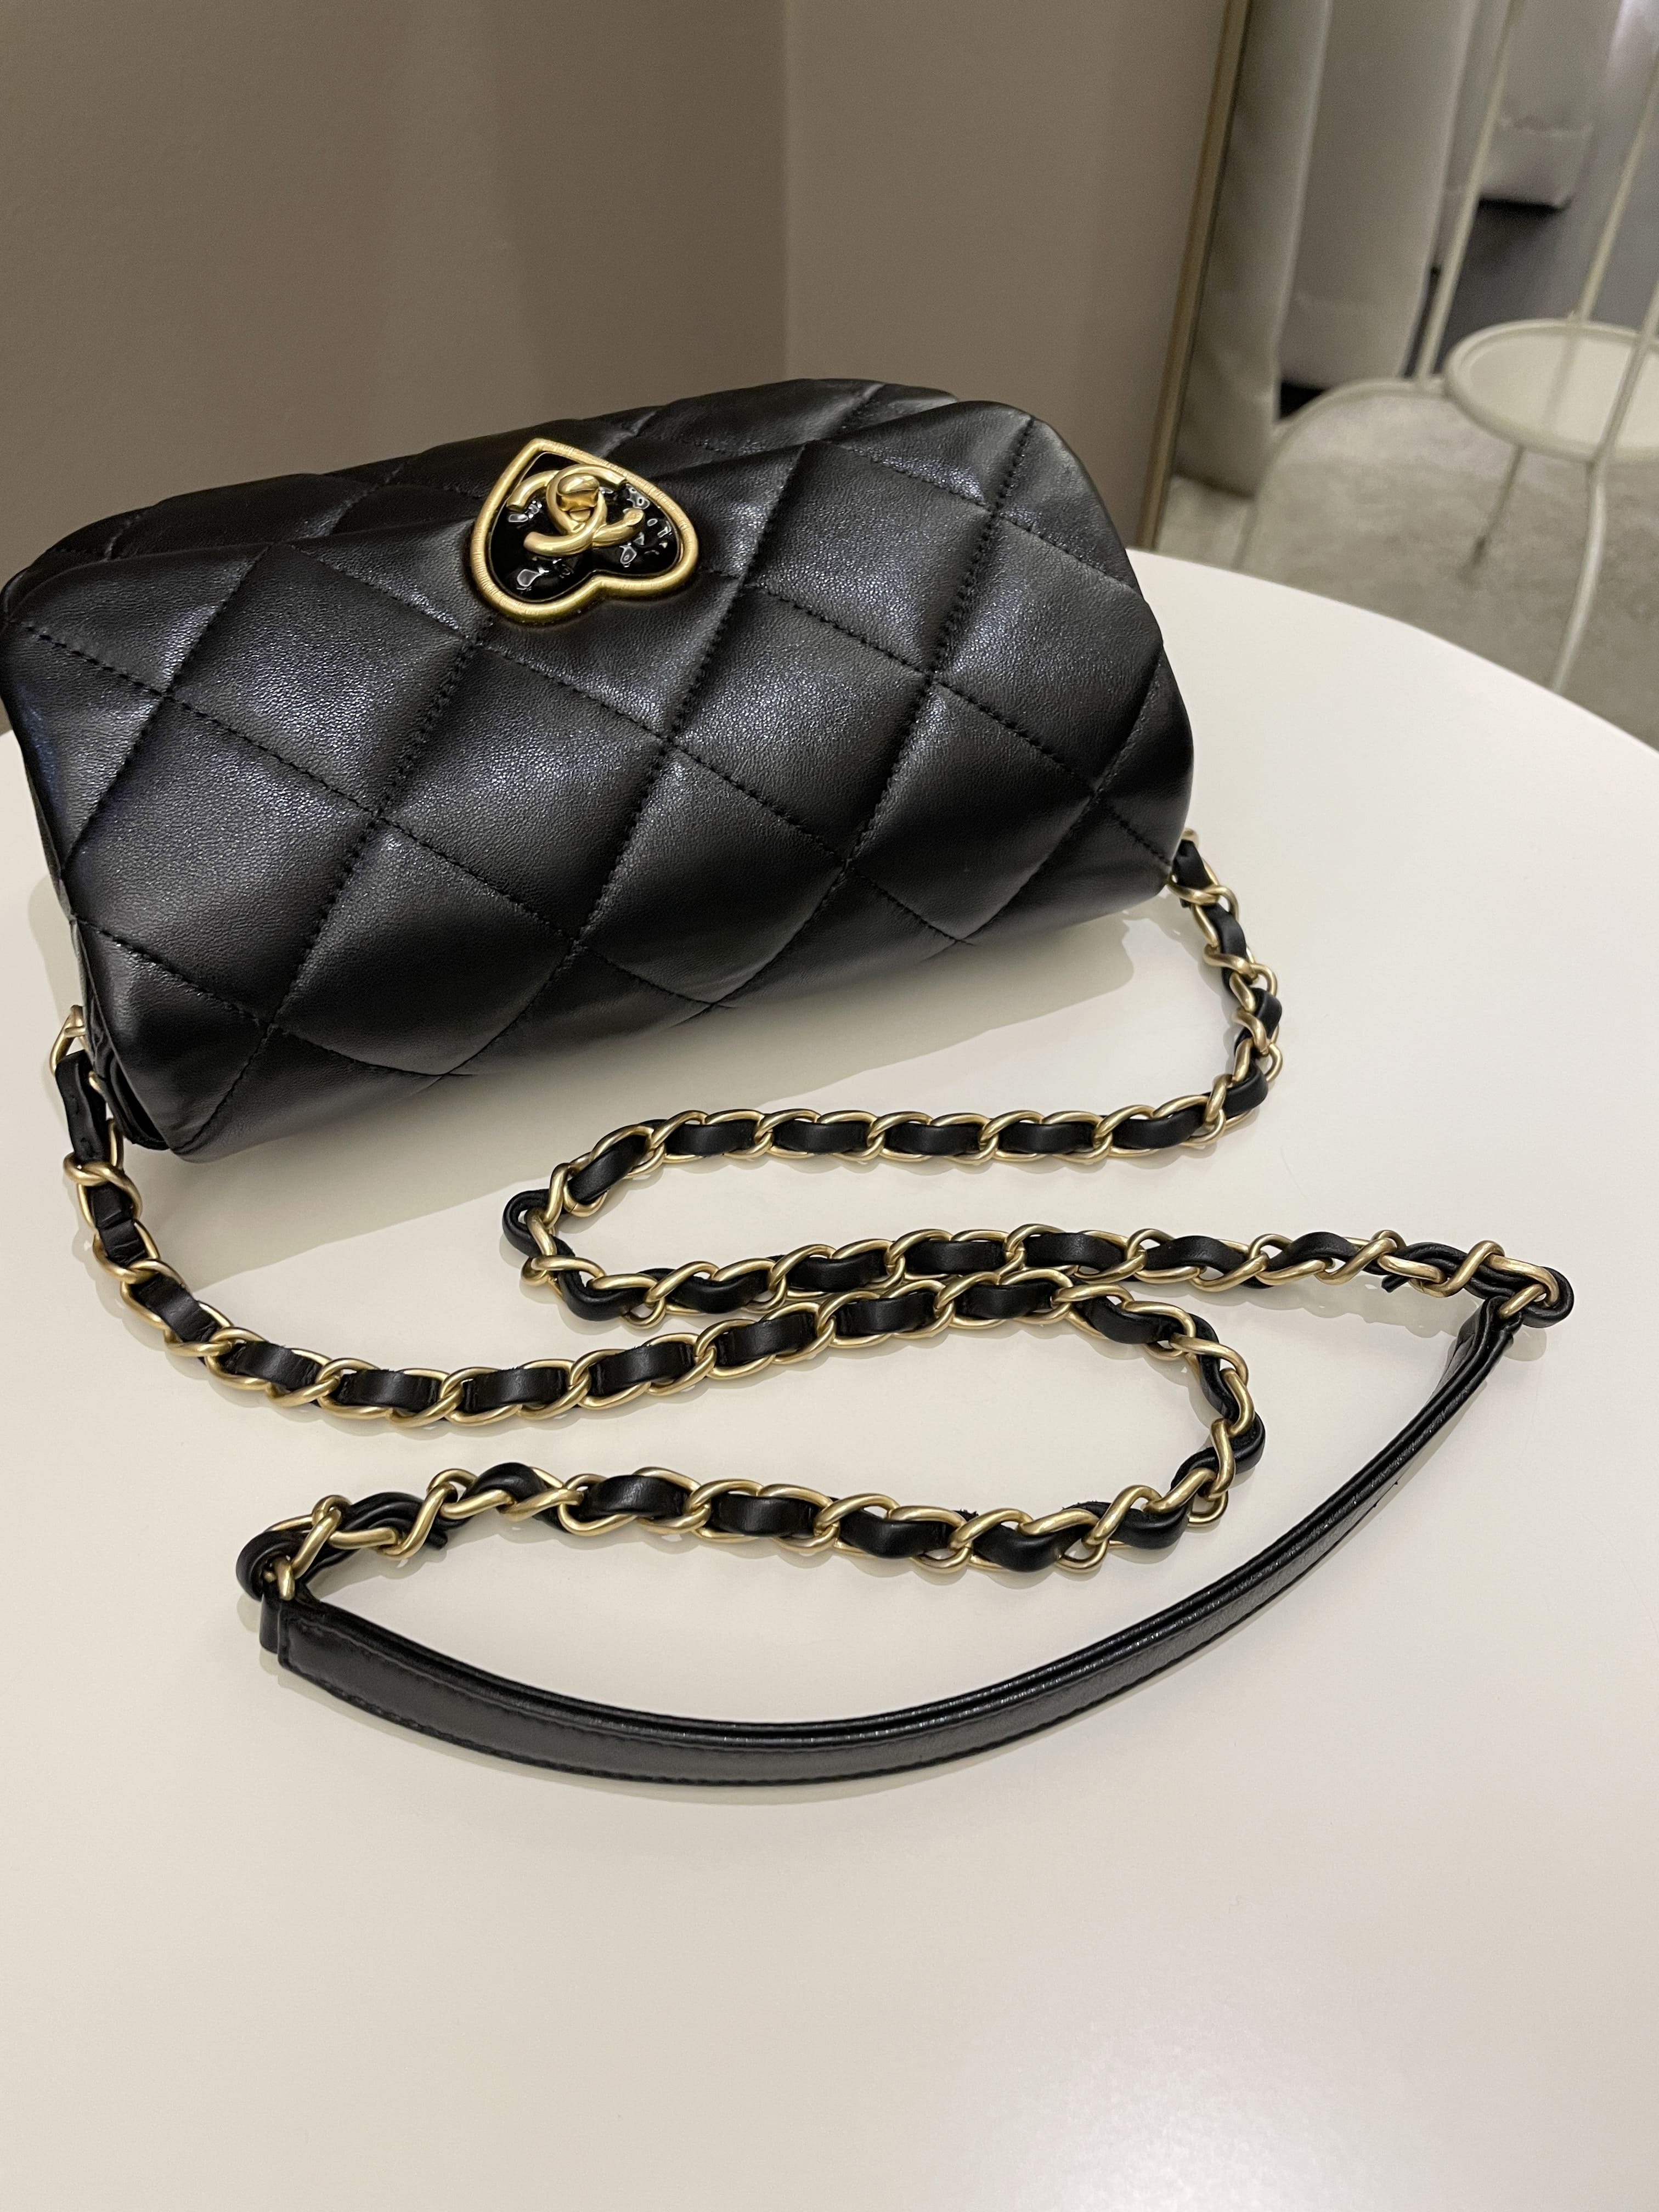 Chanel 23S Heart Flap Bag Black Lambskin